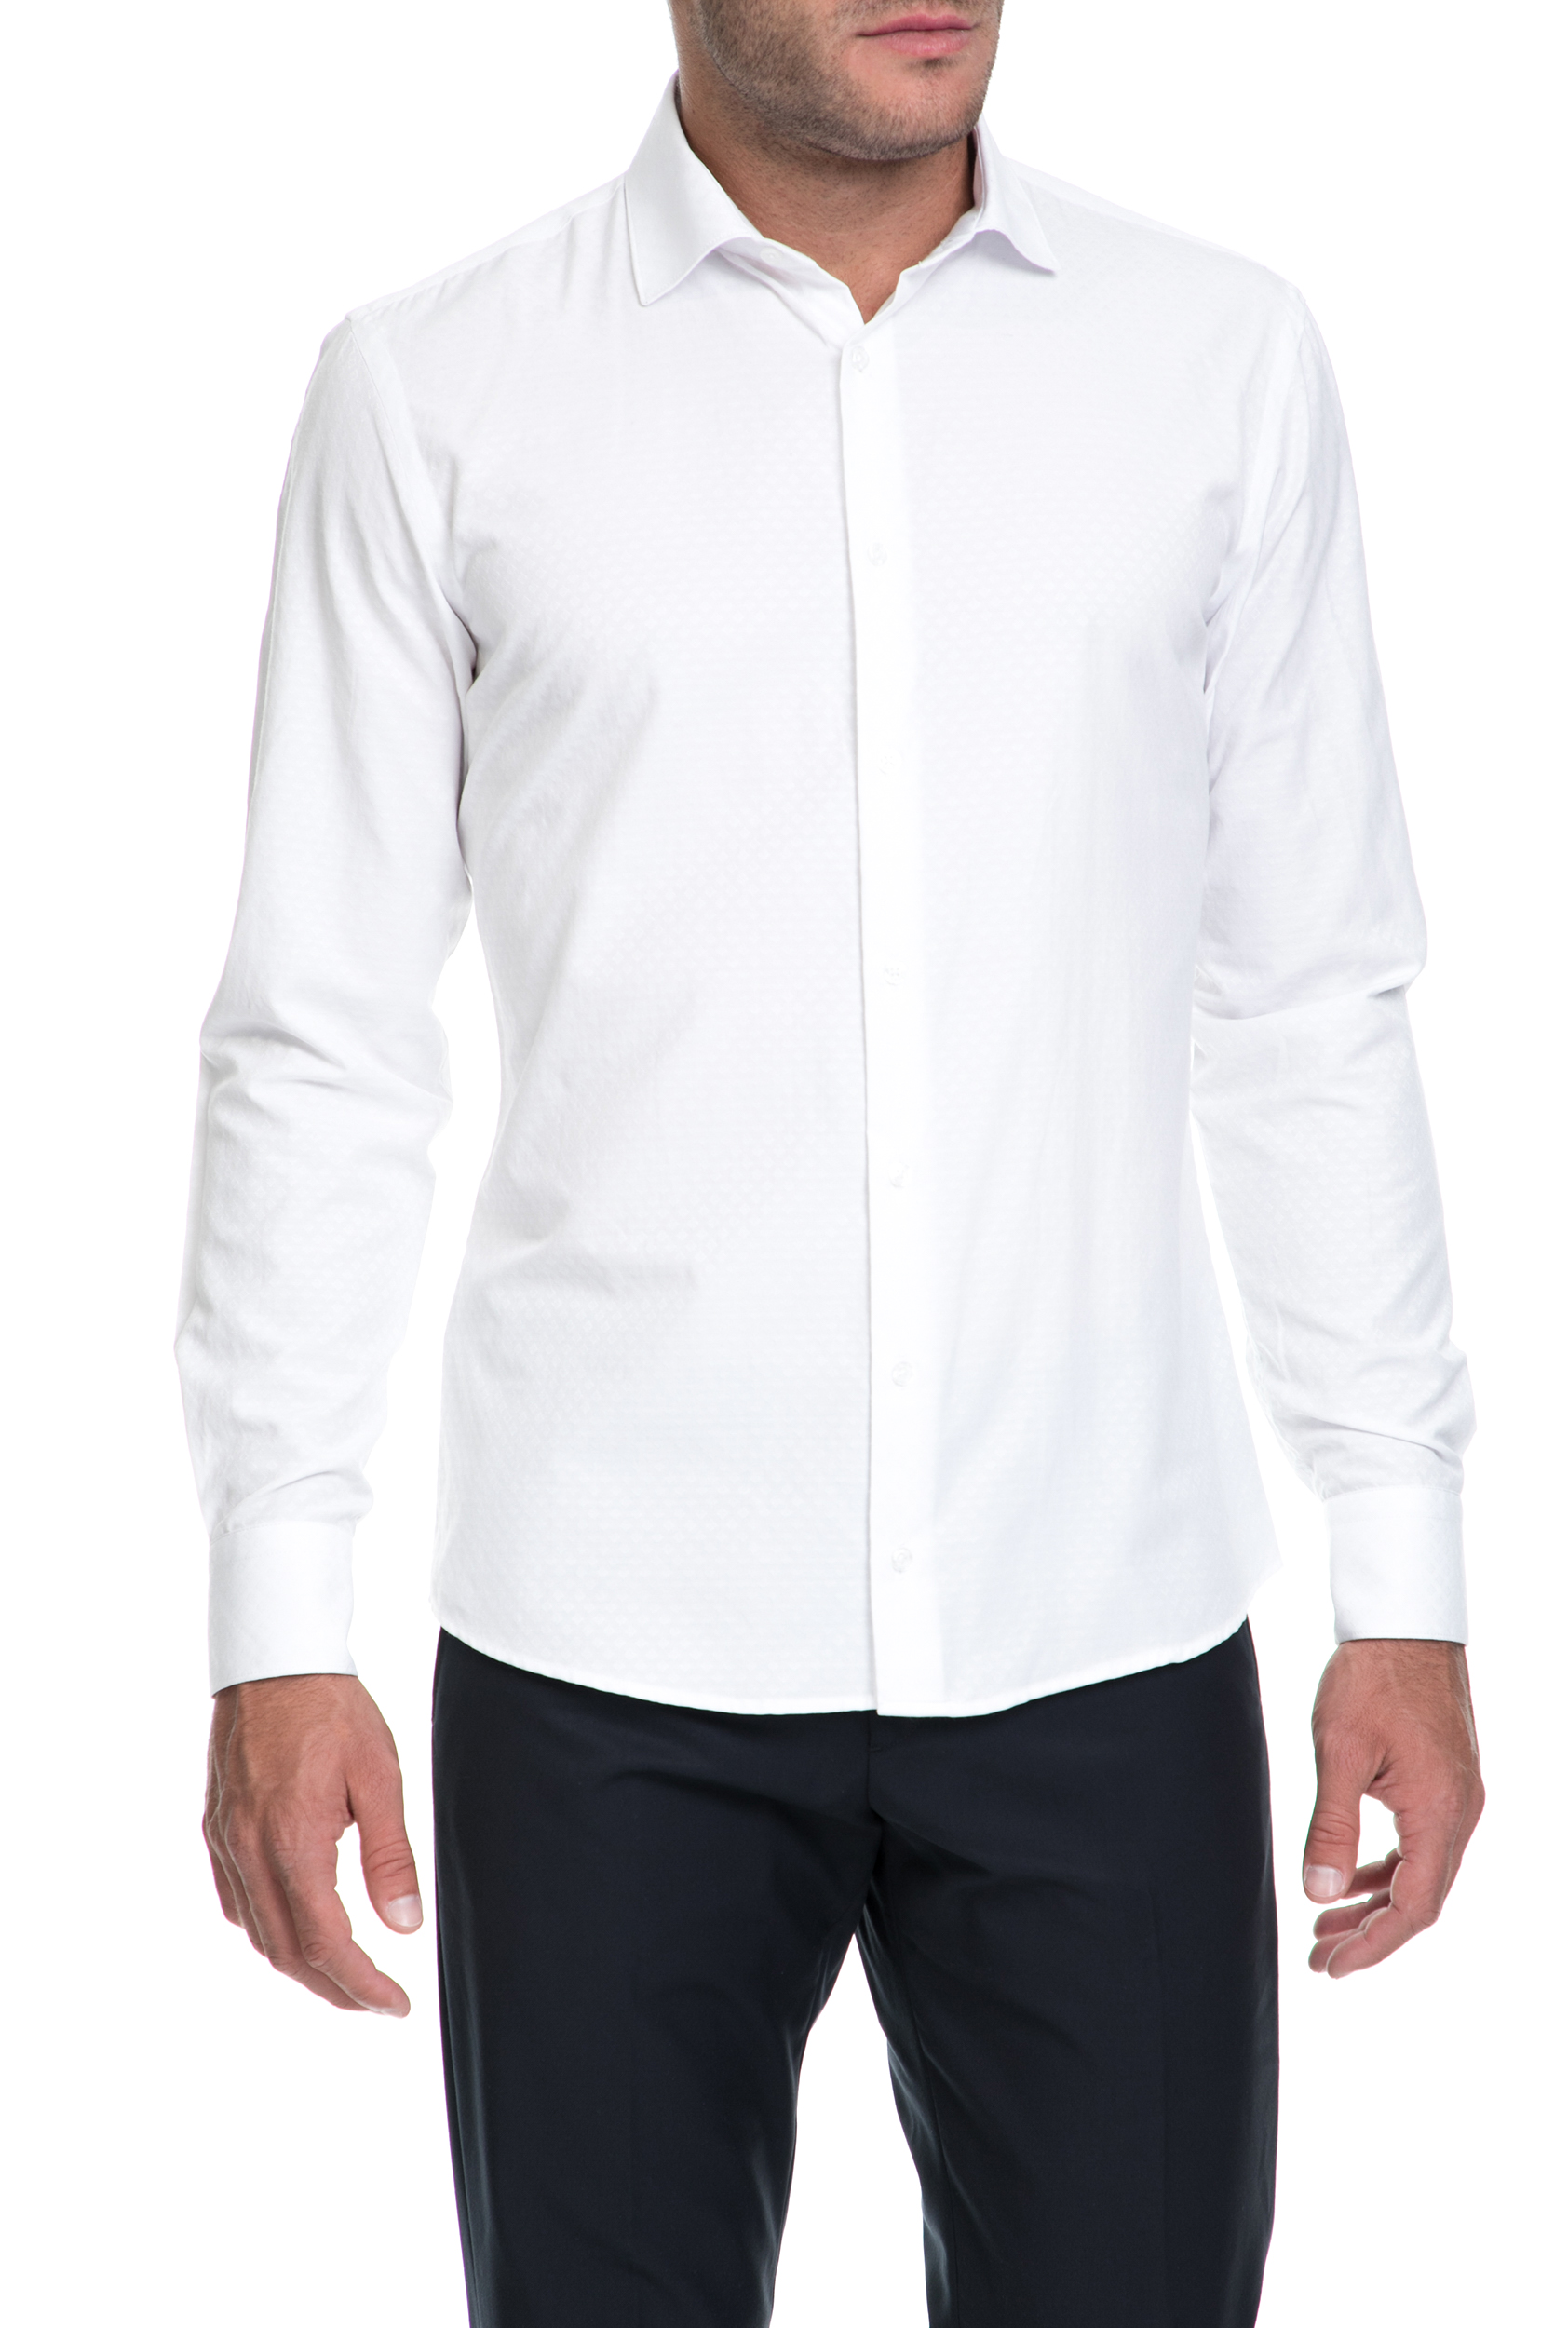 Ανδρικά/Ρούχα/Πουκάμισα/Μακρυμάνικα SSEINSE - Αντρικό πουκάμισο CAMICIA SSEINSE άσπρο